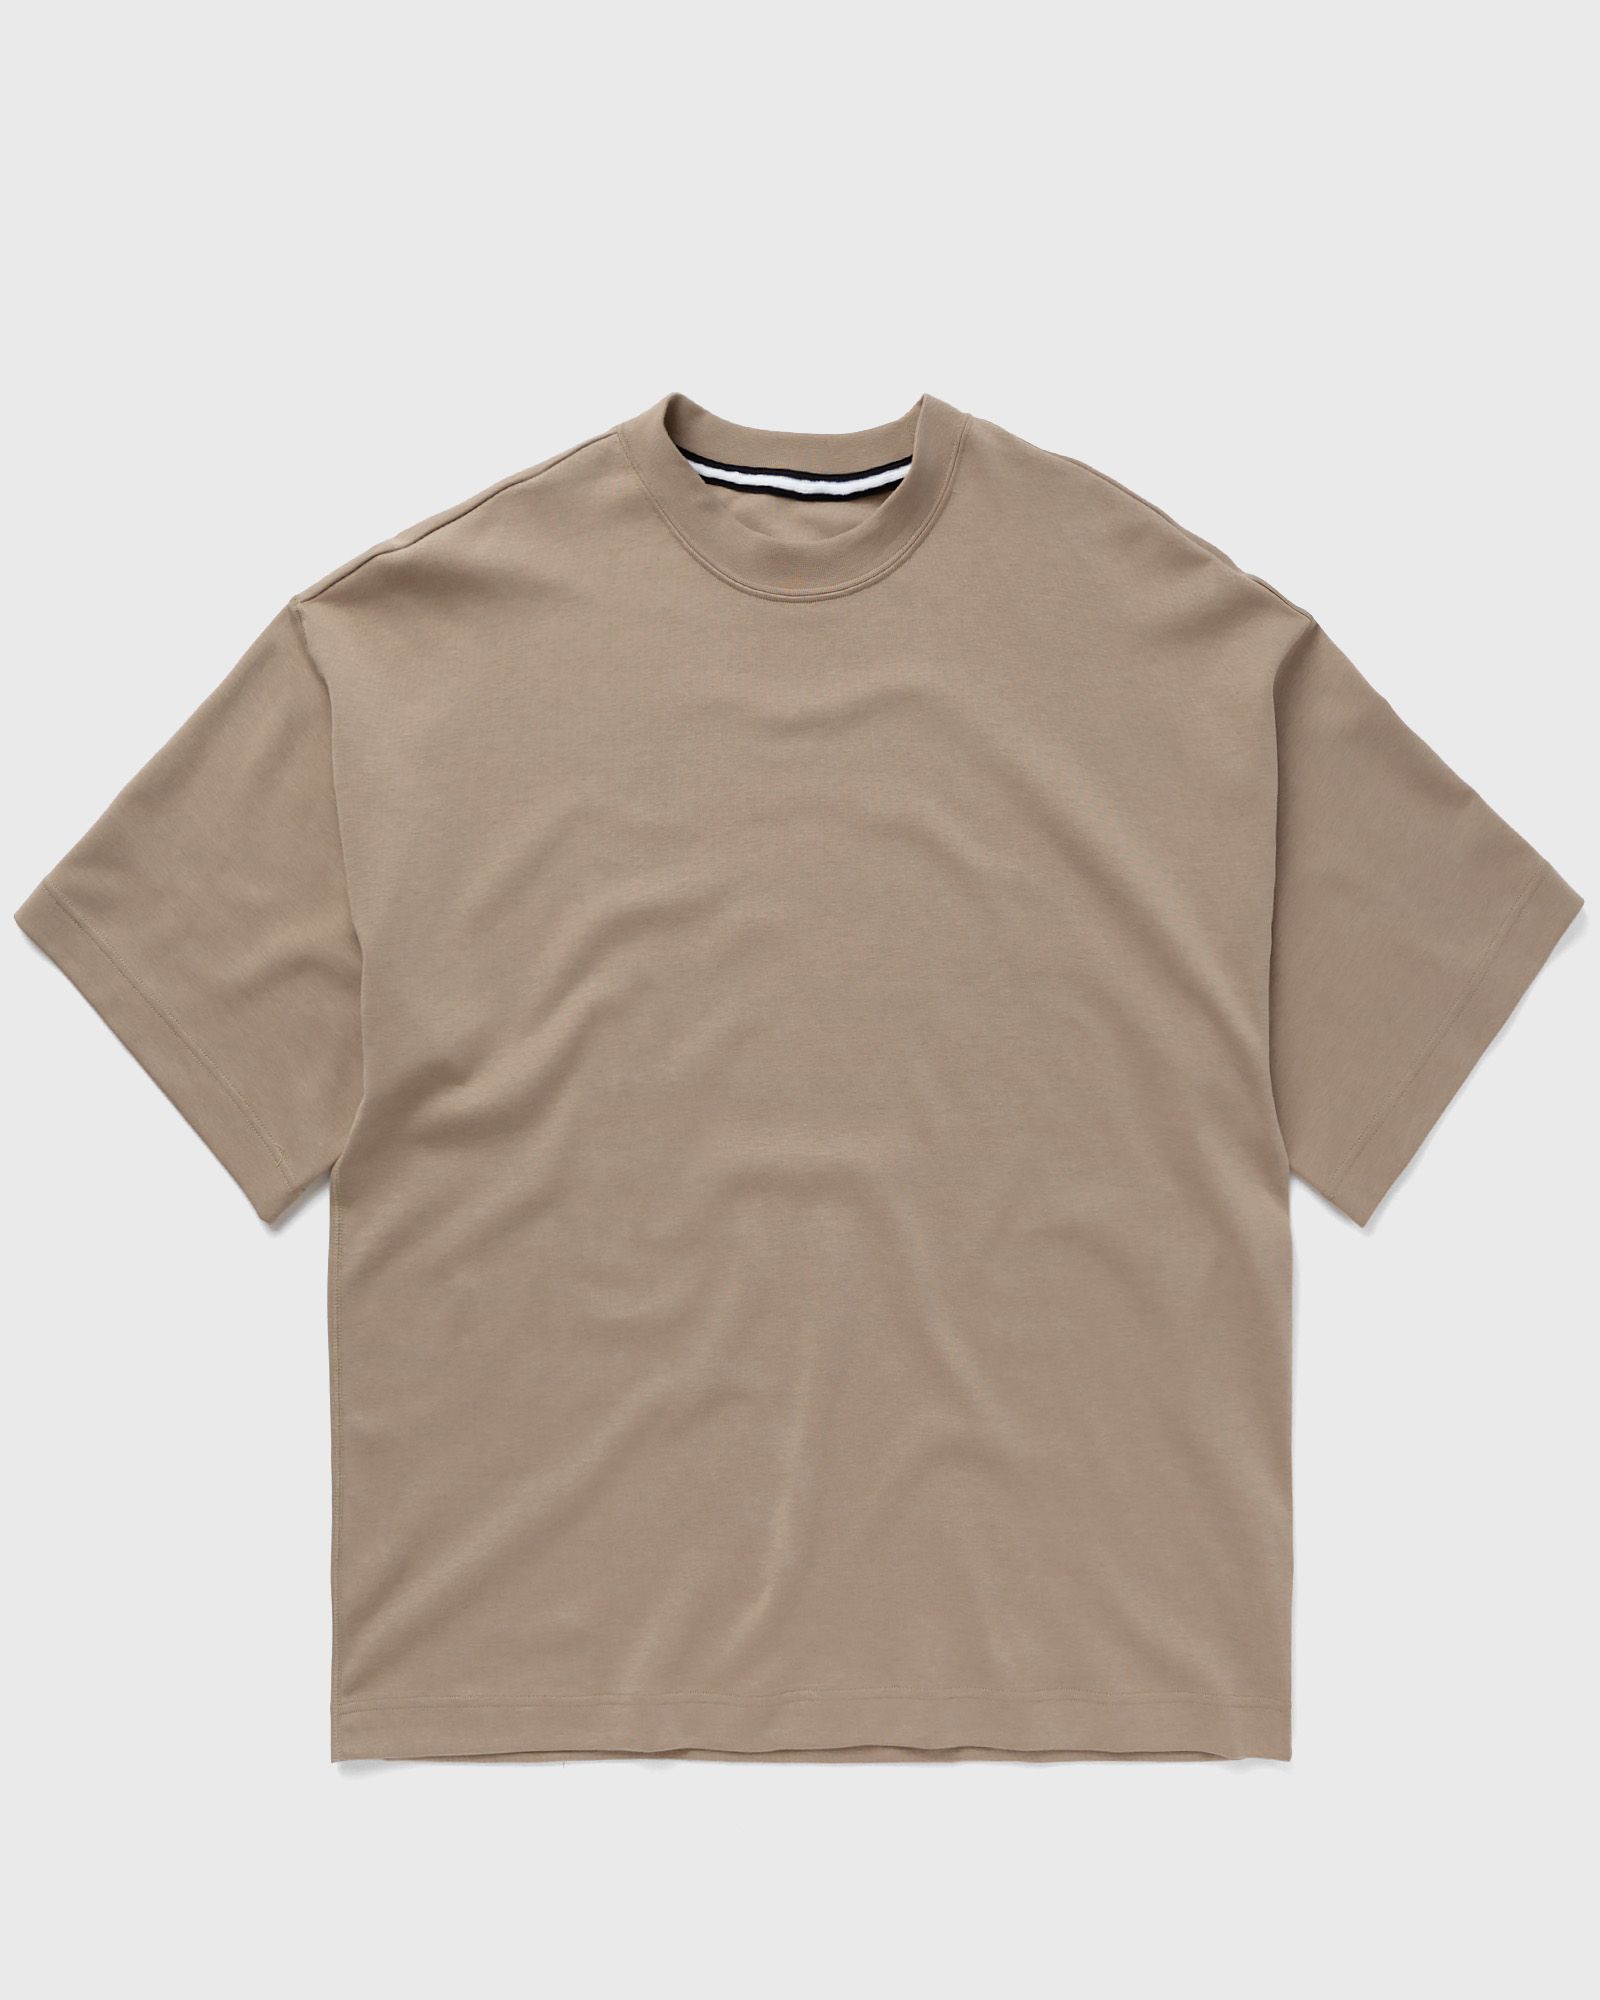 Nike - tech fleece reimagined ss top men shortsleeves brown in größe:xl